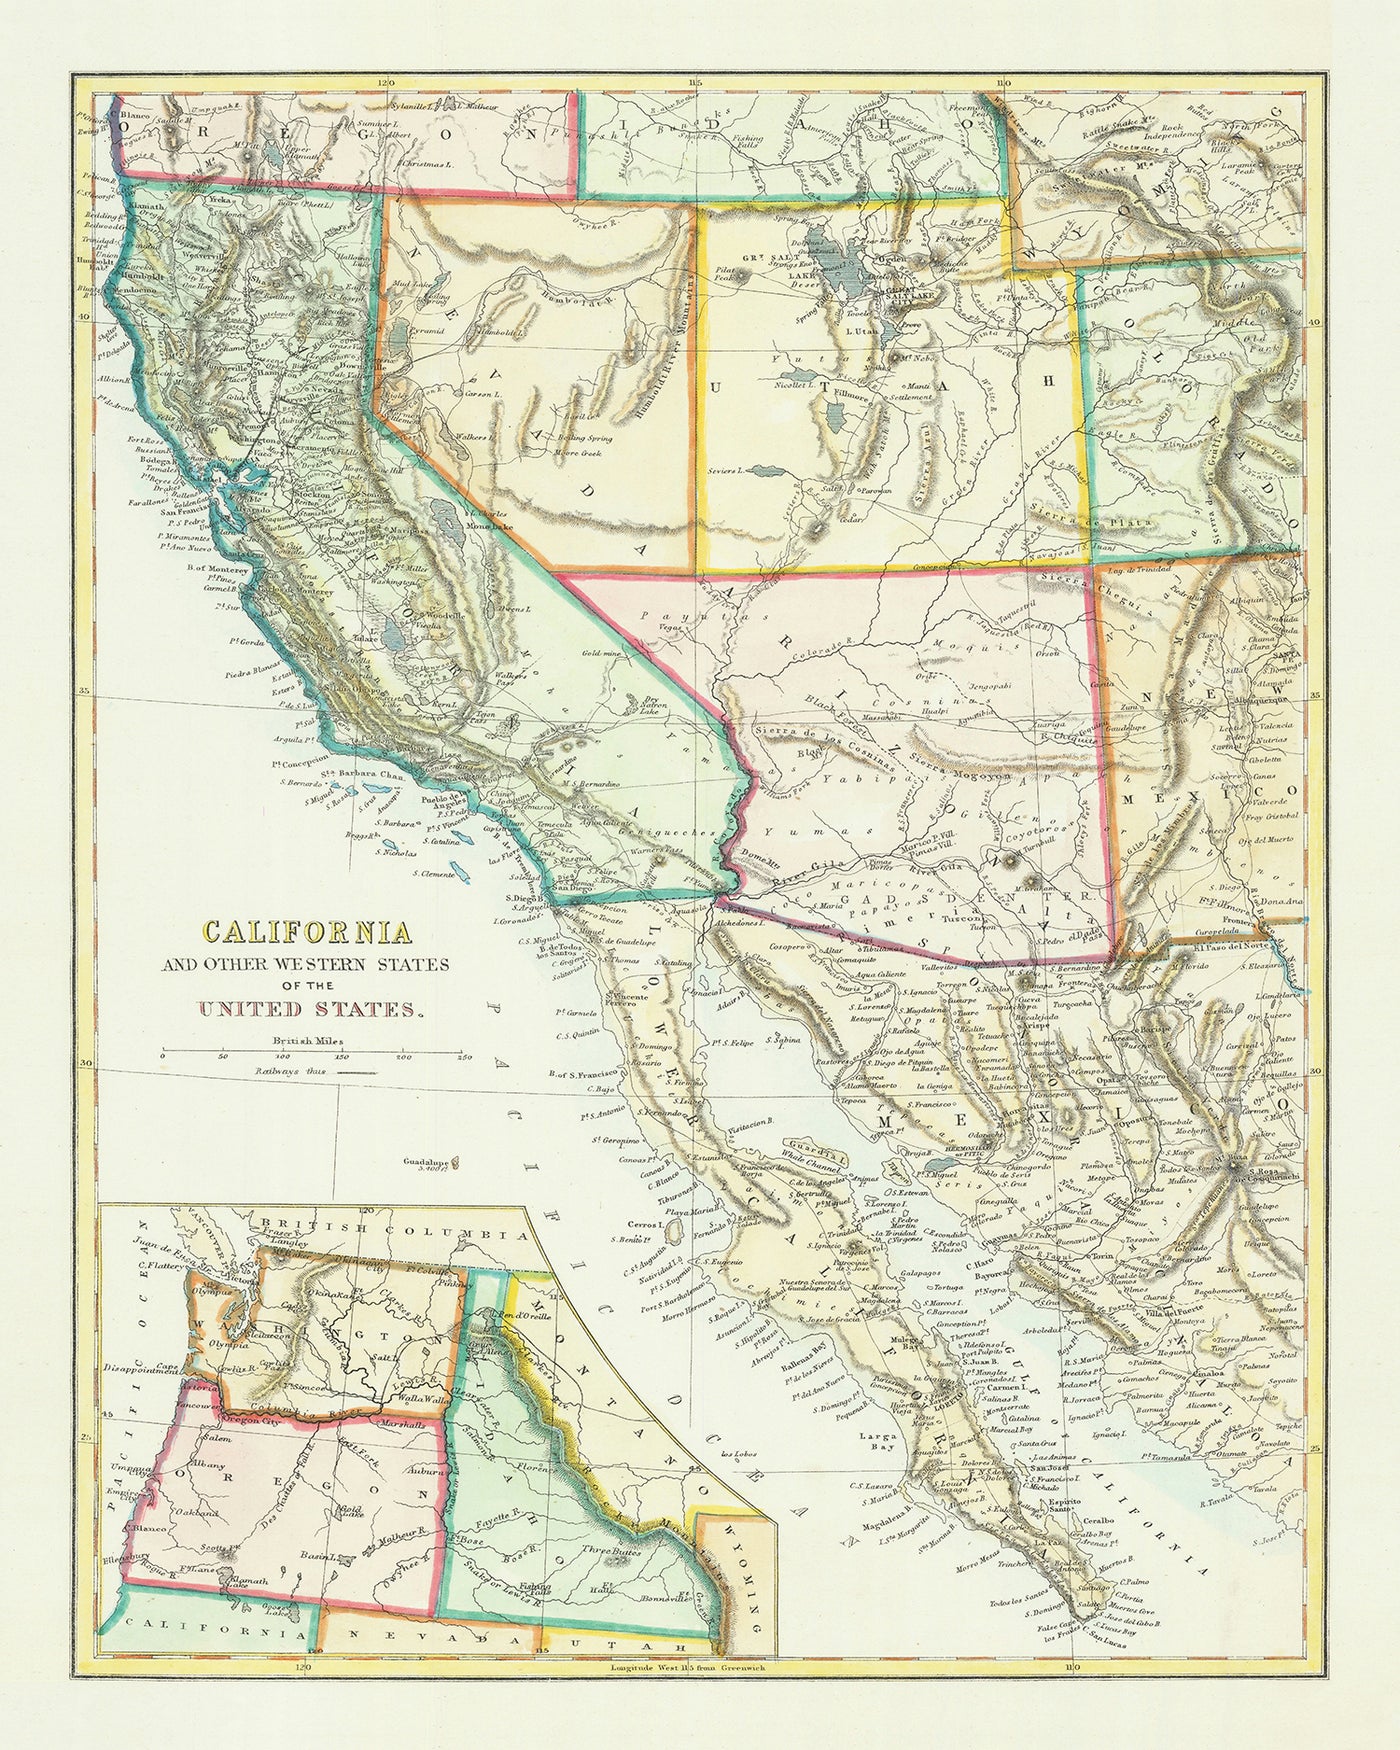 Mapa antiguo de California, Arizona, Nevada, Utah, etc. en 1868: San Francisco, Valle de la Muerte, Sierra Nevada, Río Colorado, Mormones en Utah